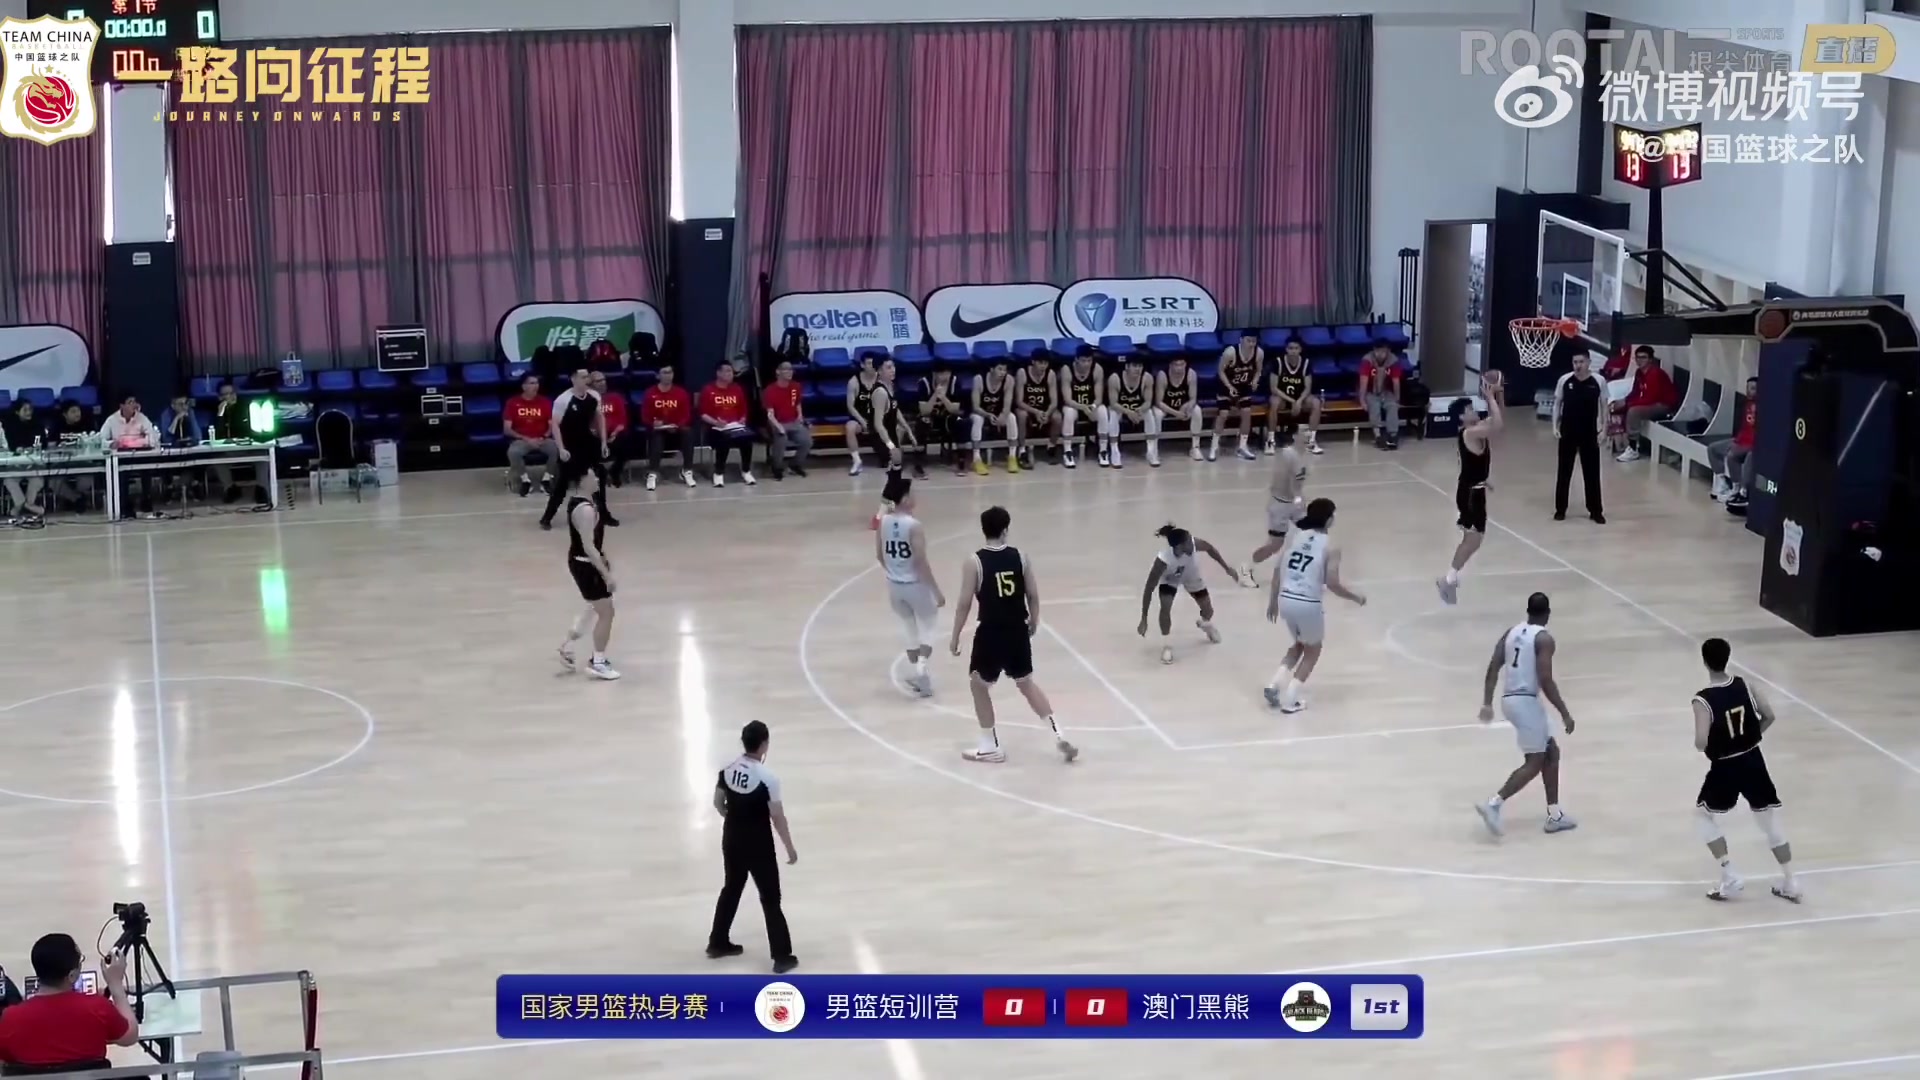  内部赛第二场！中国男篮短训营108-89澳门黑熊 全场集锦！